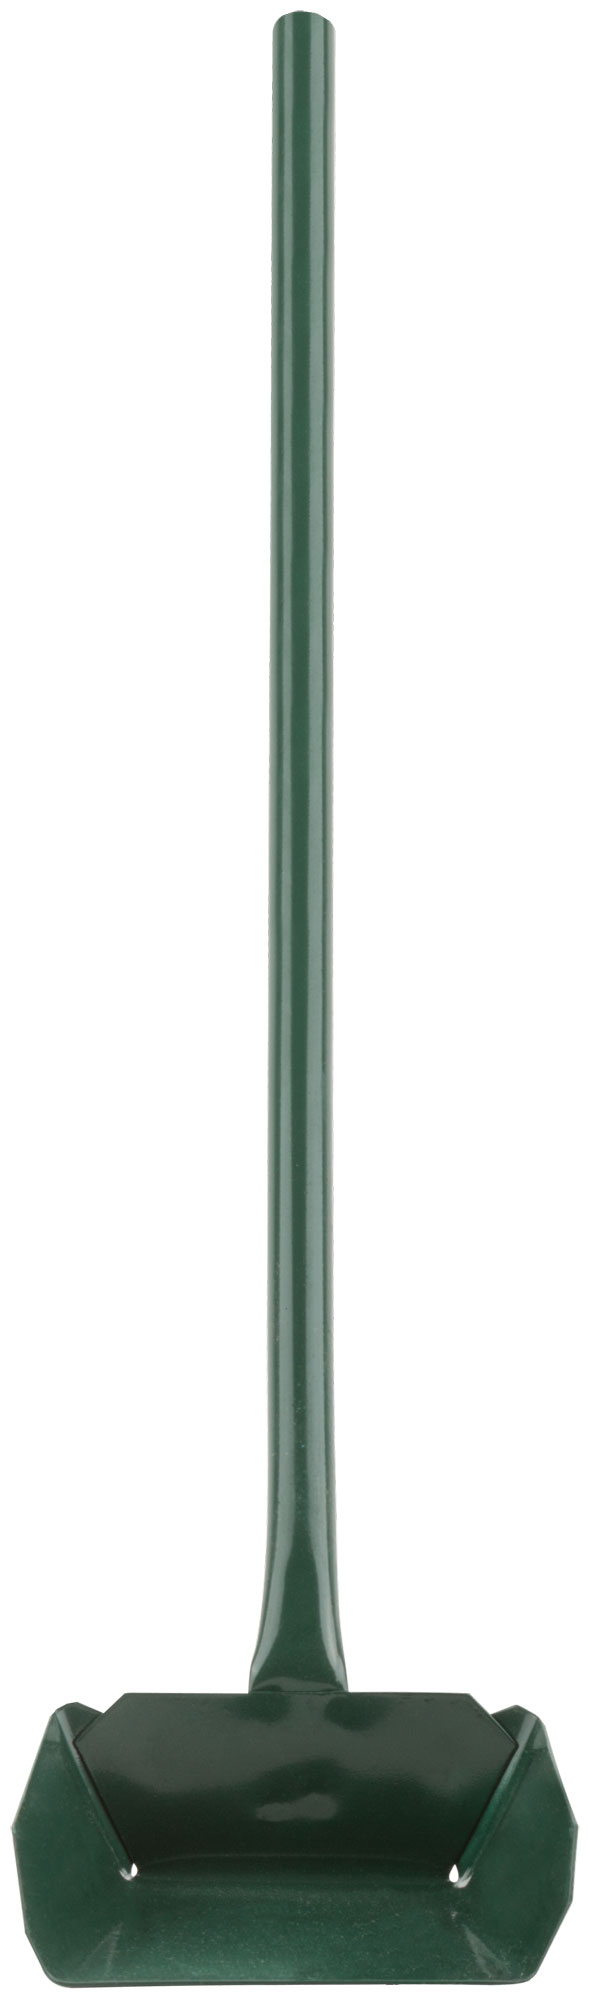 Совок зольный металлический, длинная ручка 610 мм